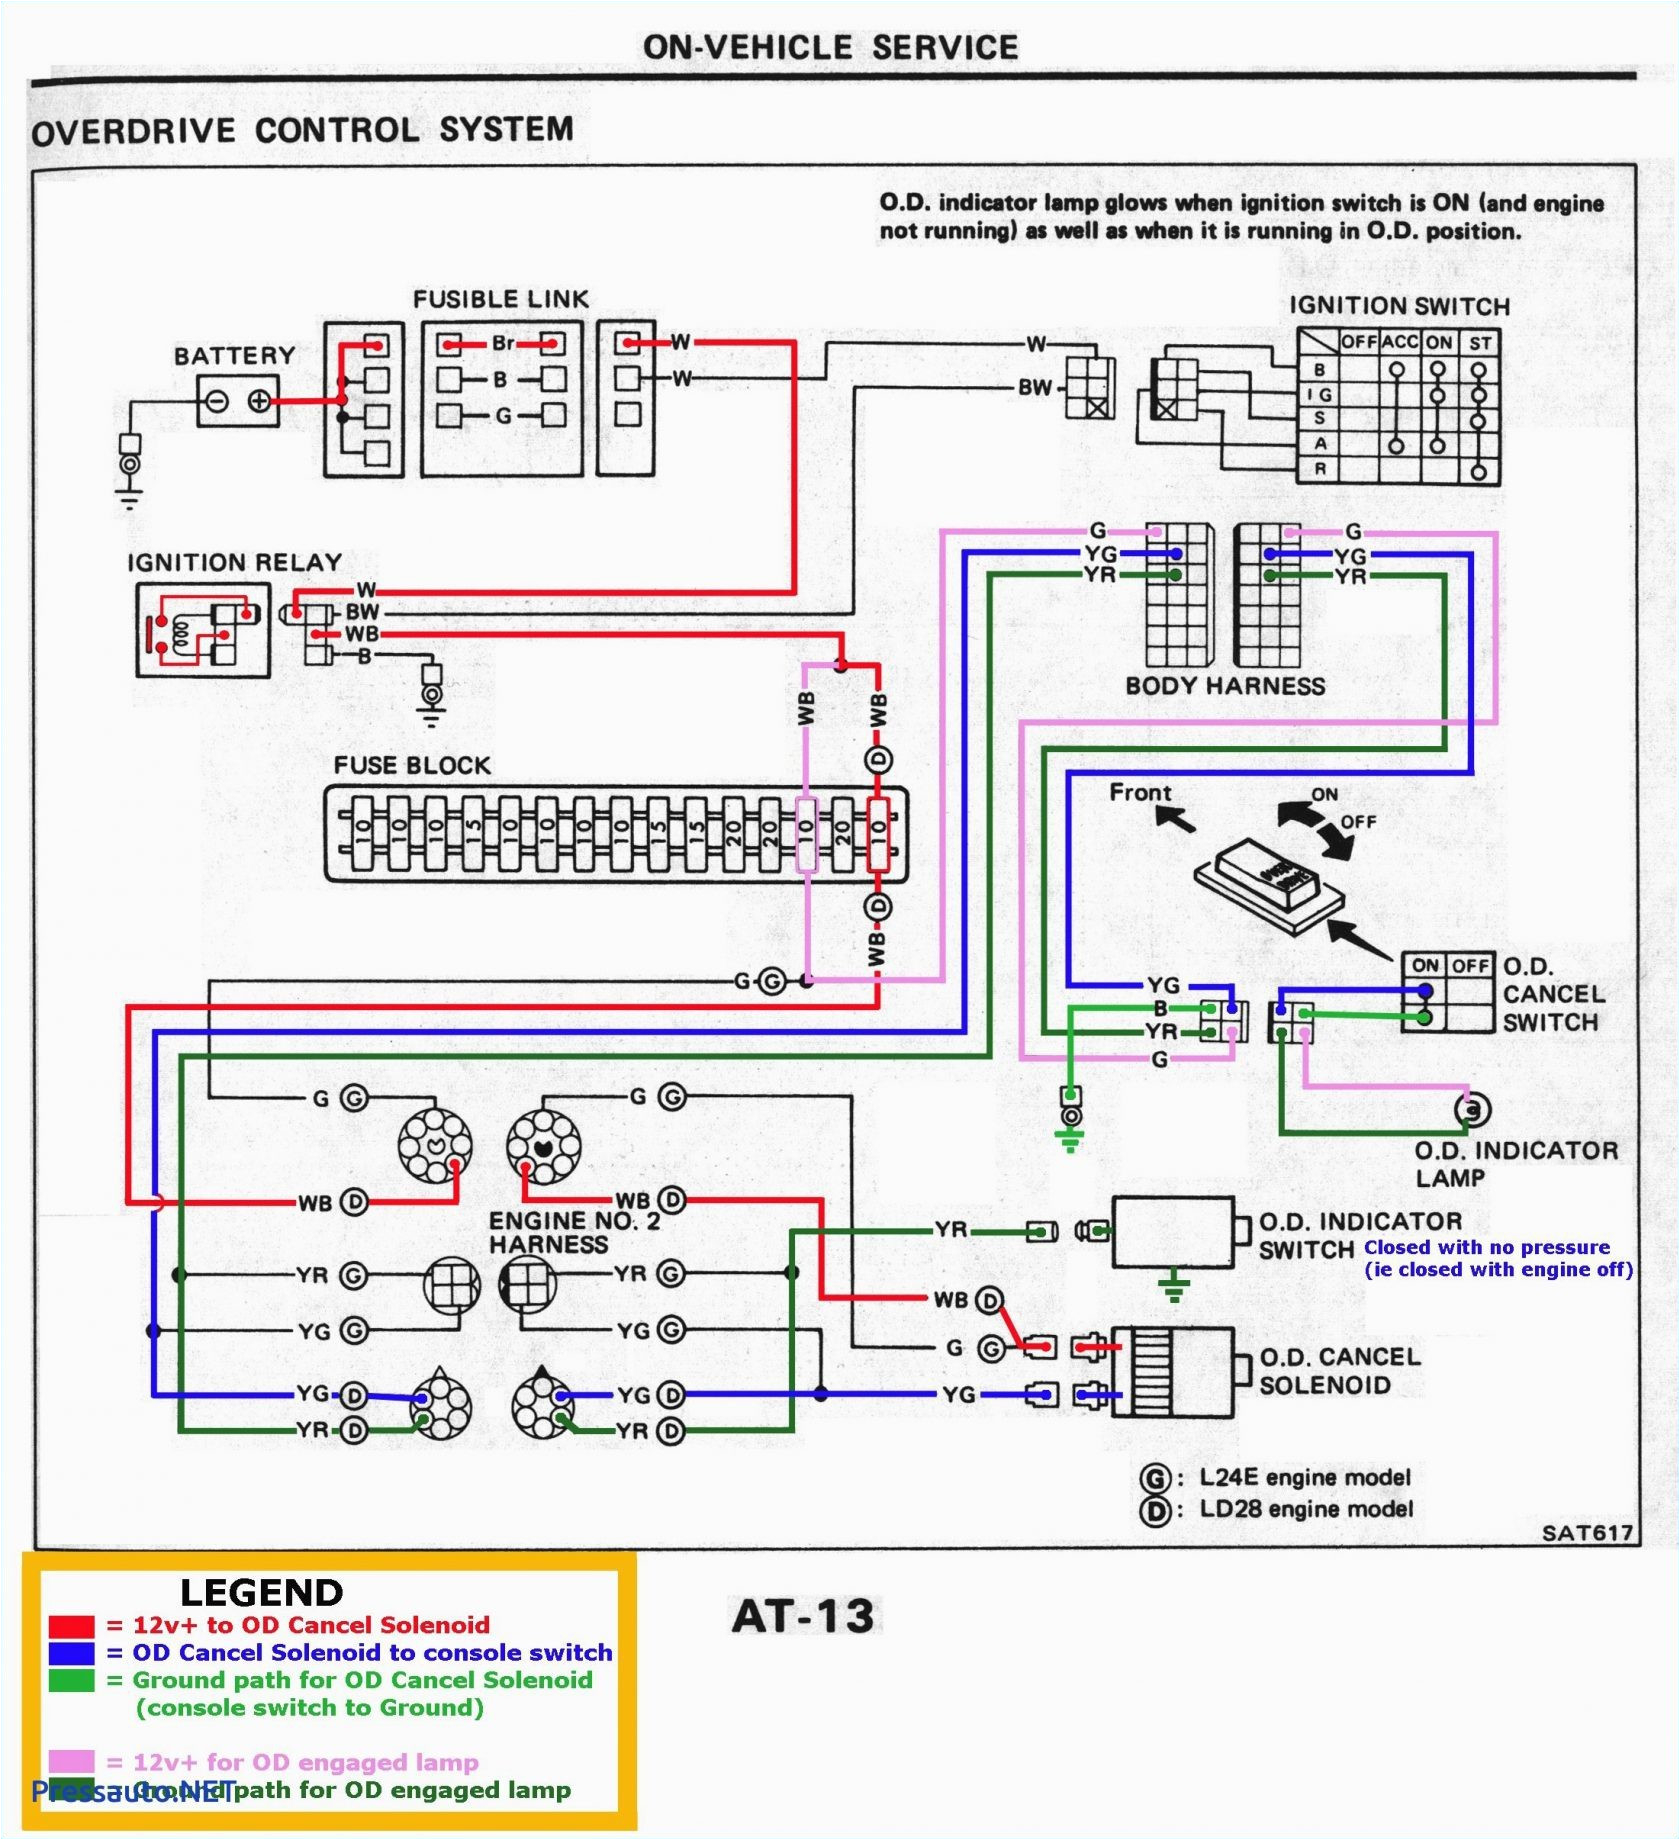 grundfos boiler wiring diagram wiring diagram files boiler pump wiring diagram wiring diagram grundfos boiler wiring